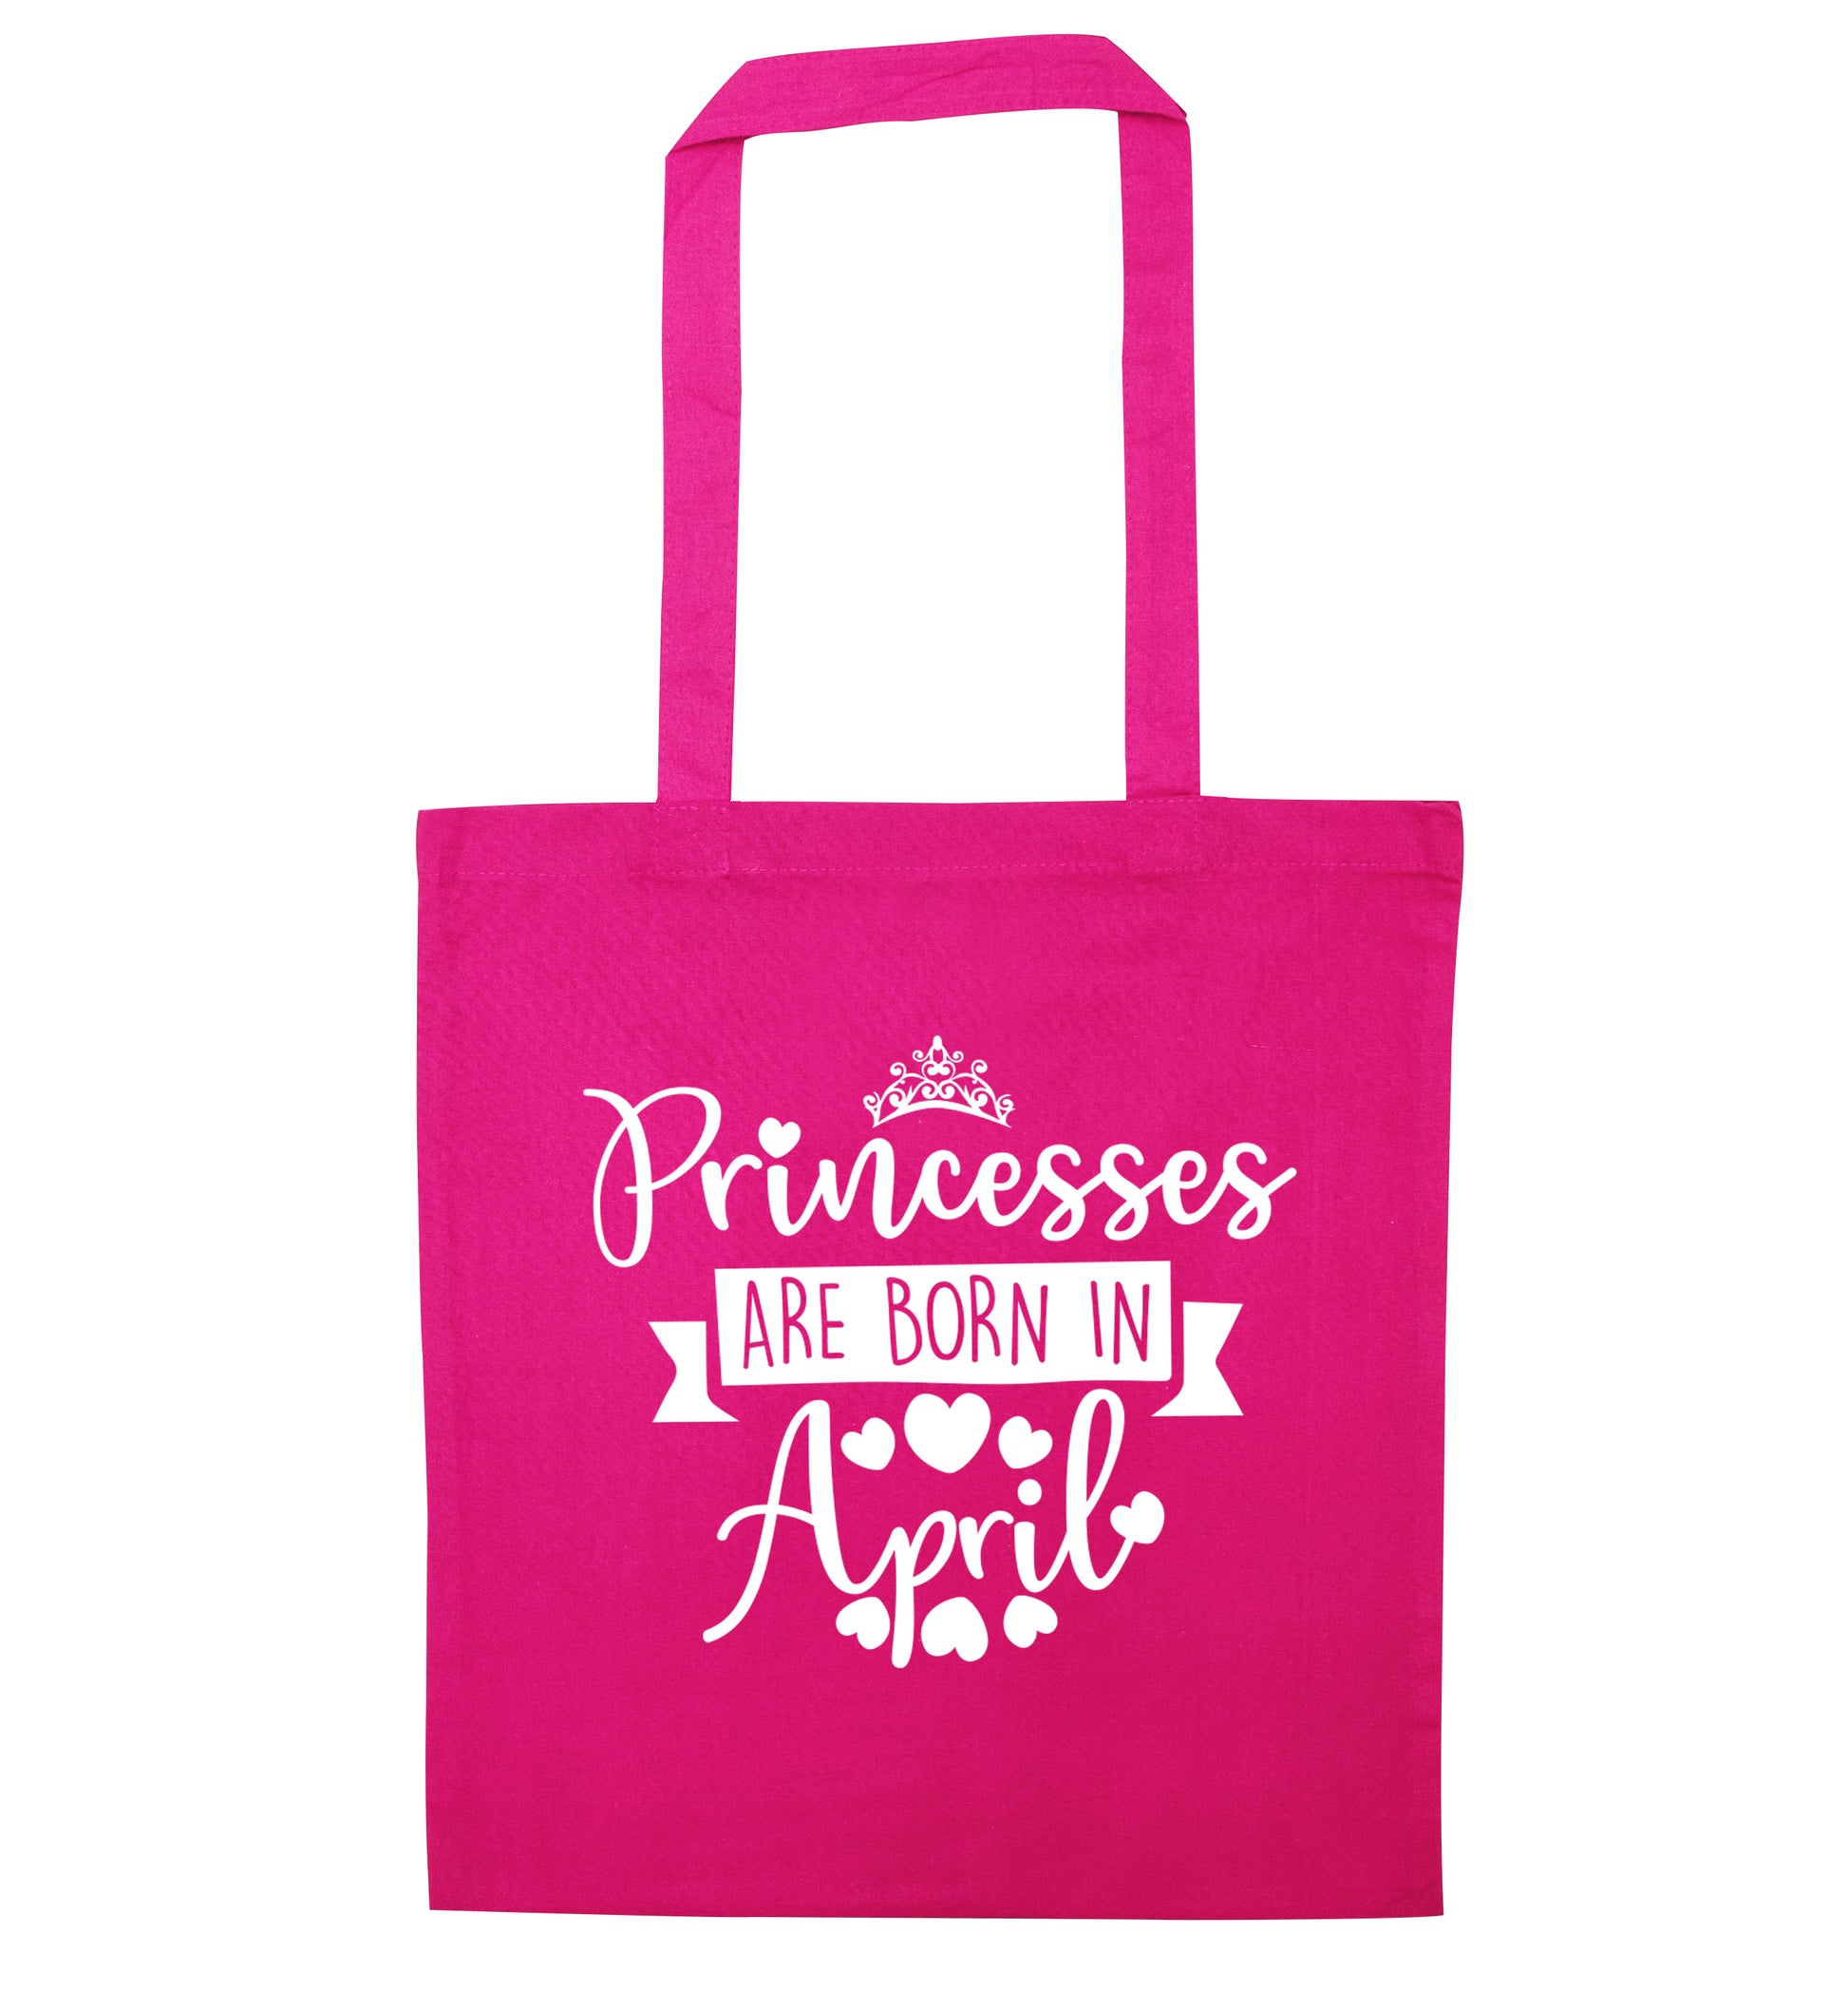 Princesses are born in April pink tote bag